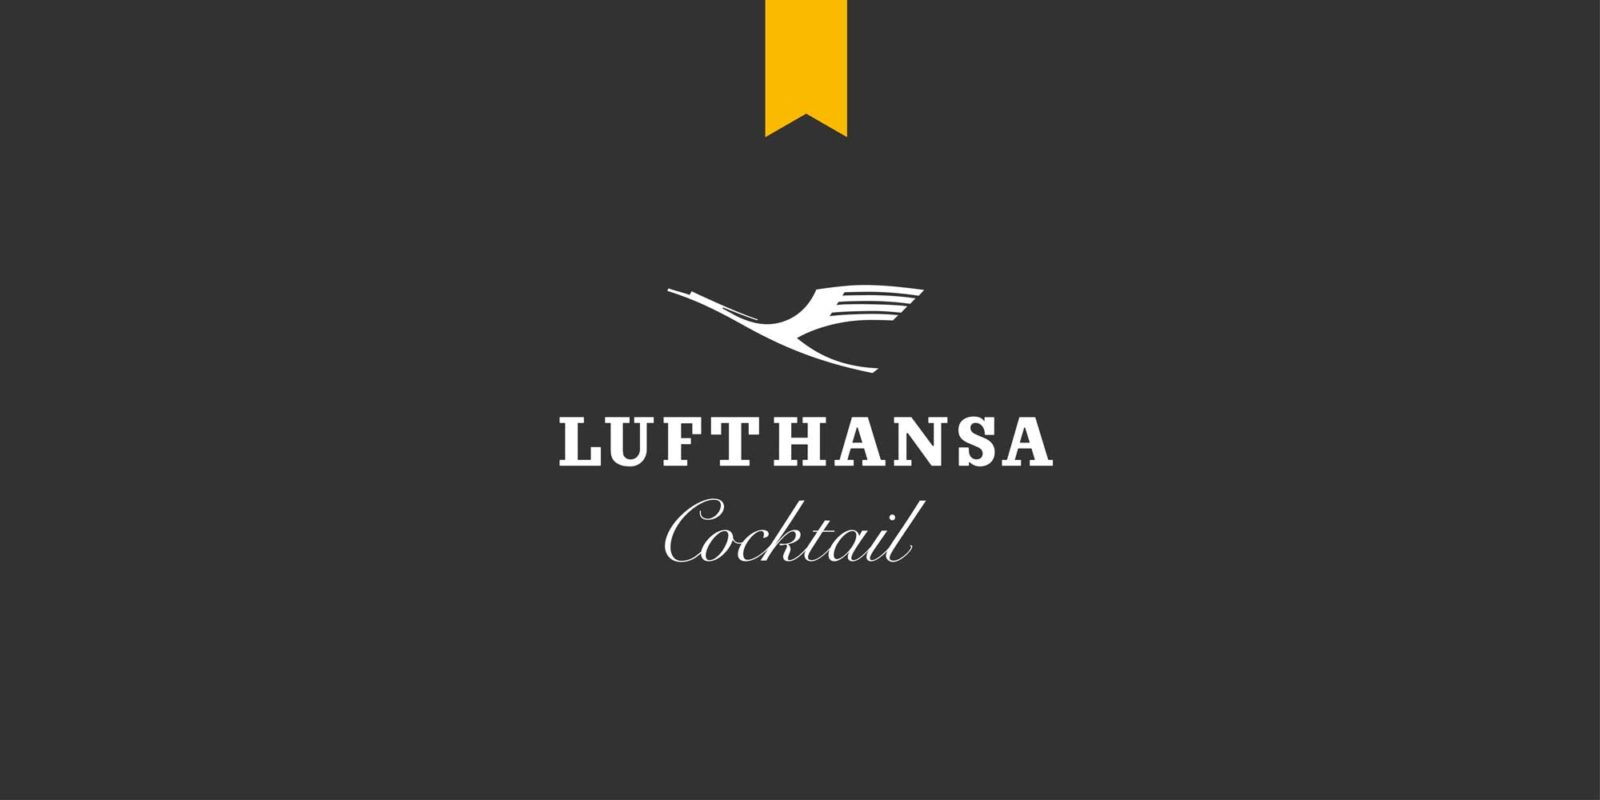 Editienne Grafikdesign - Kommunikationsdesign Berlin- Brand Packaging Design- Spreewood Distillers- Lufthansa Cocktail 26